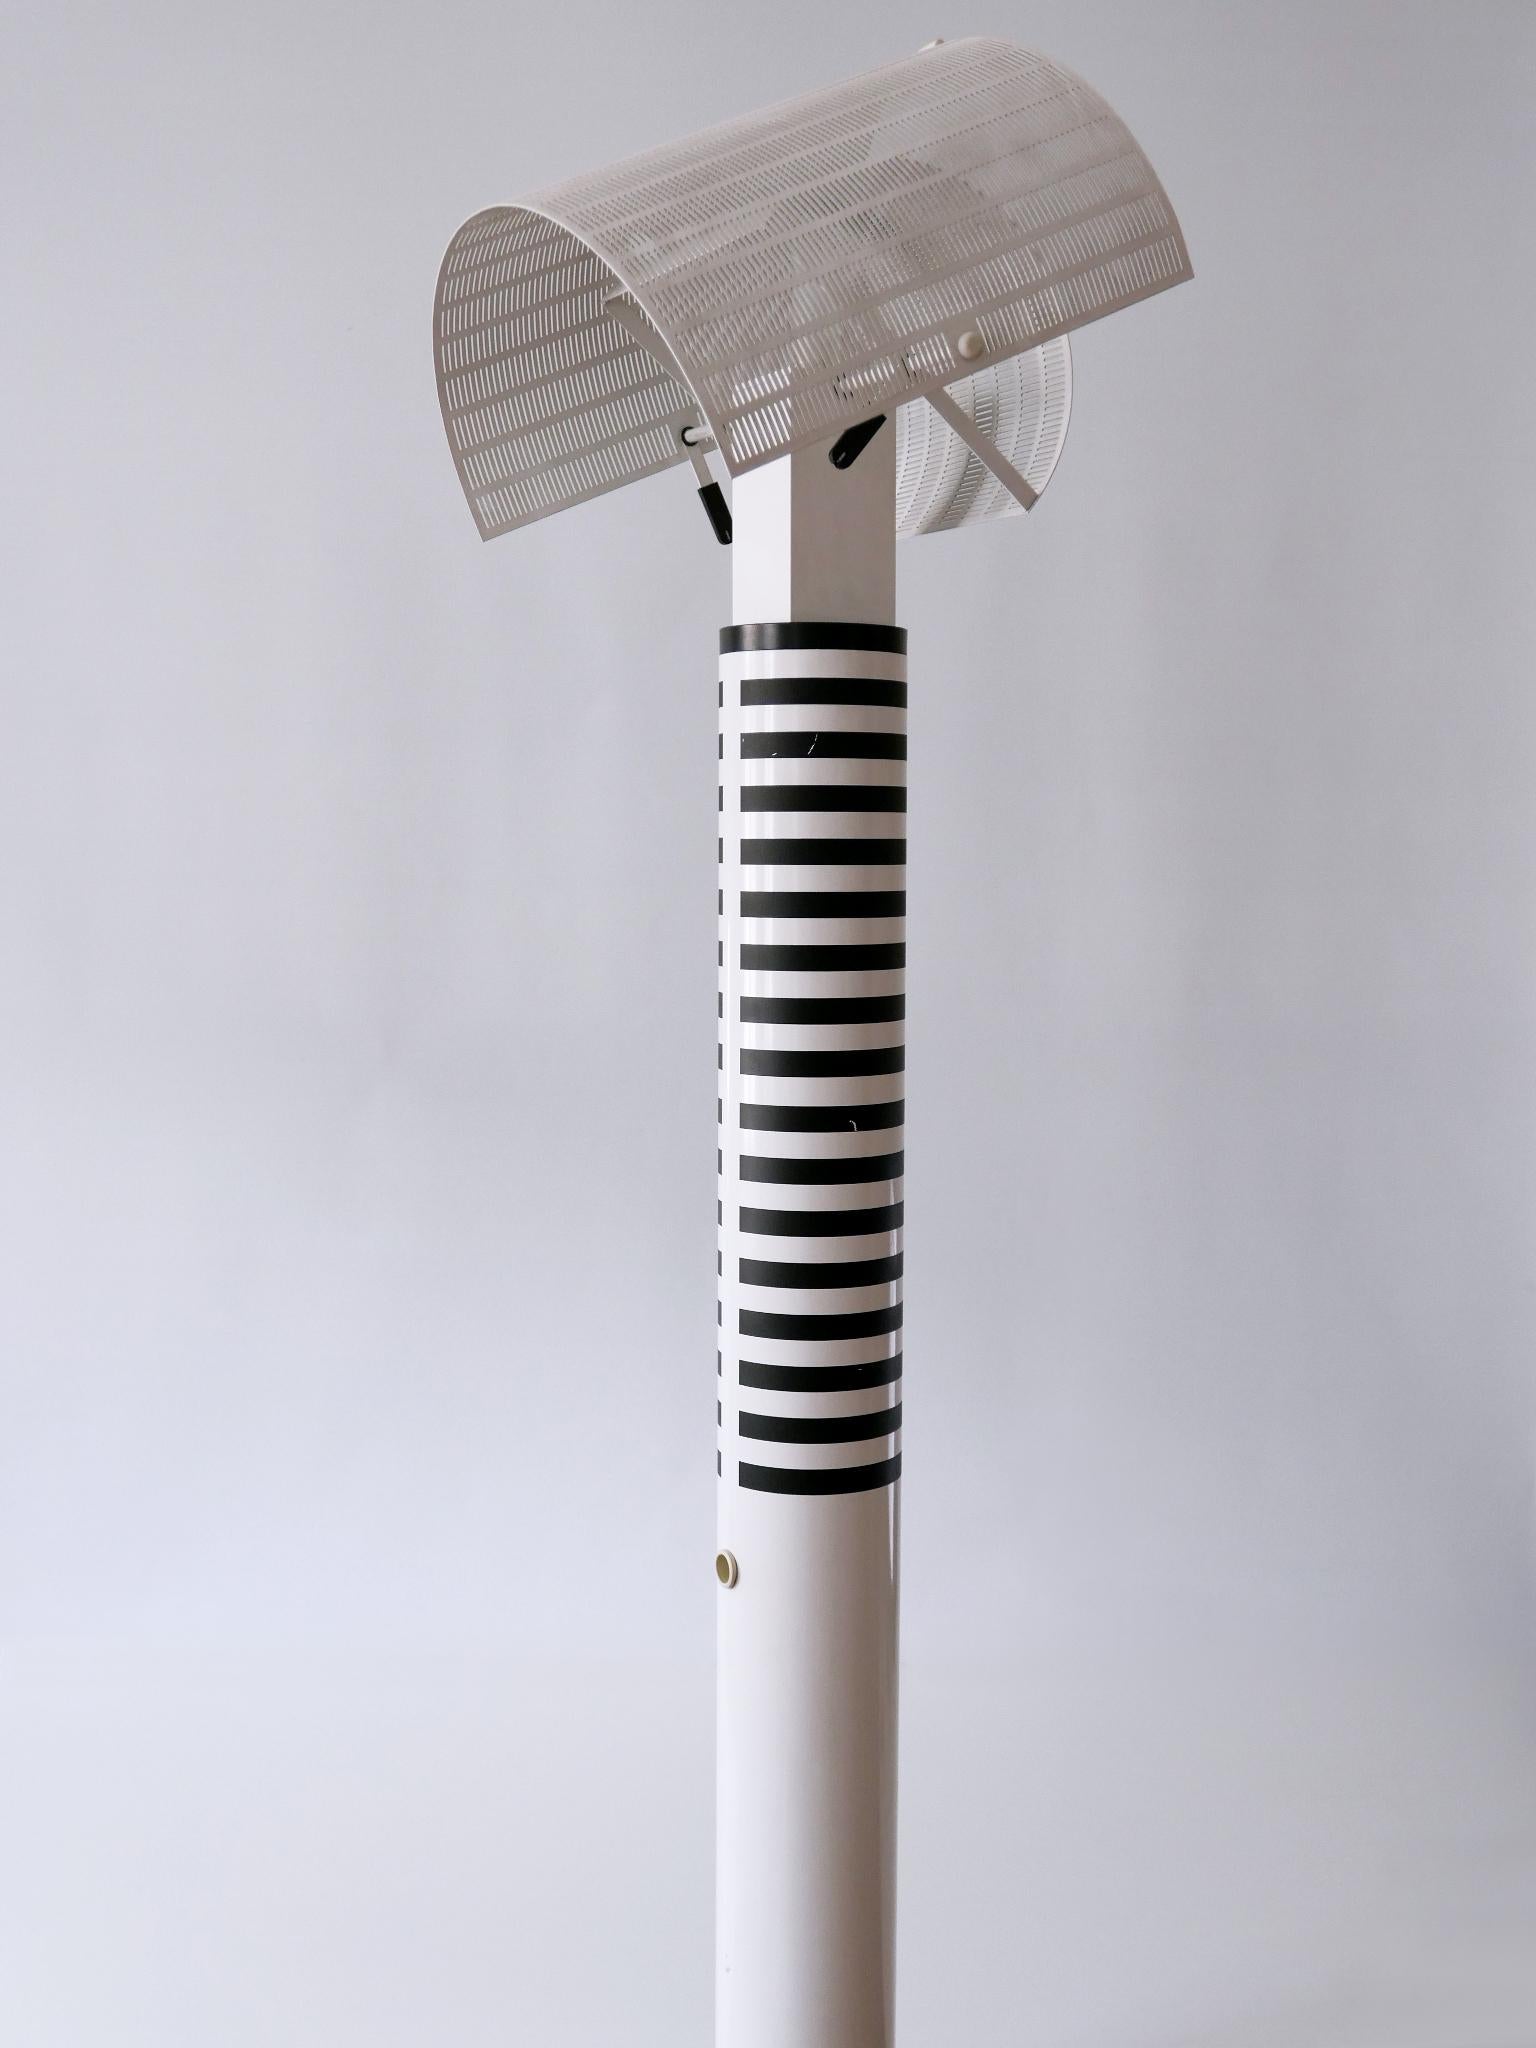 Monumental Postmodern Shogun Floor Lamp by Mario Botta for Artemide Italy 1980s For Sale 2